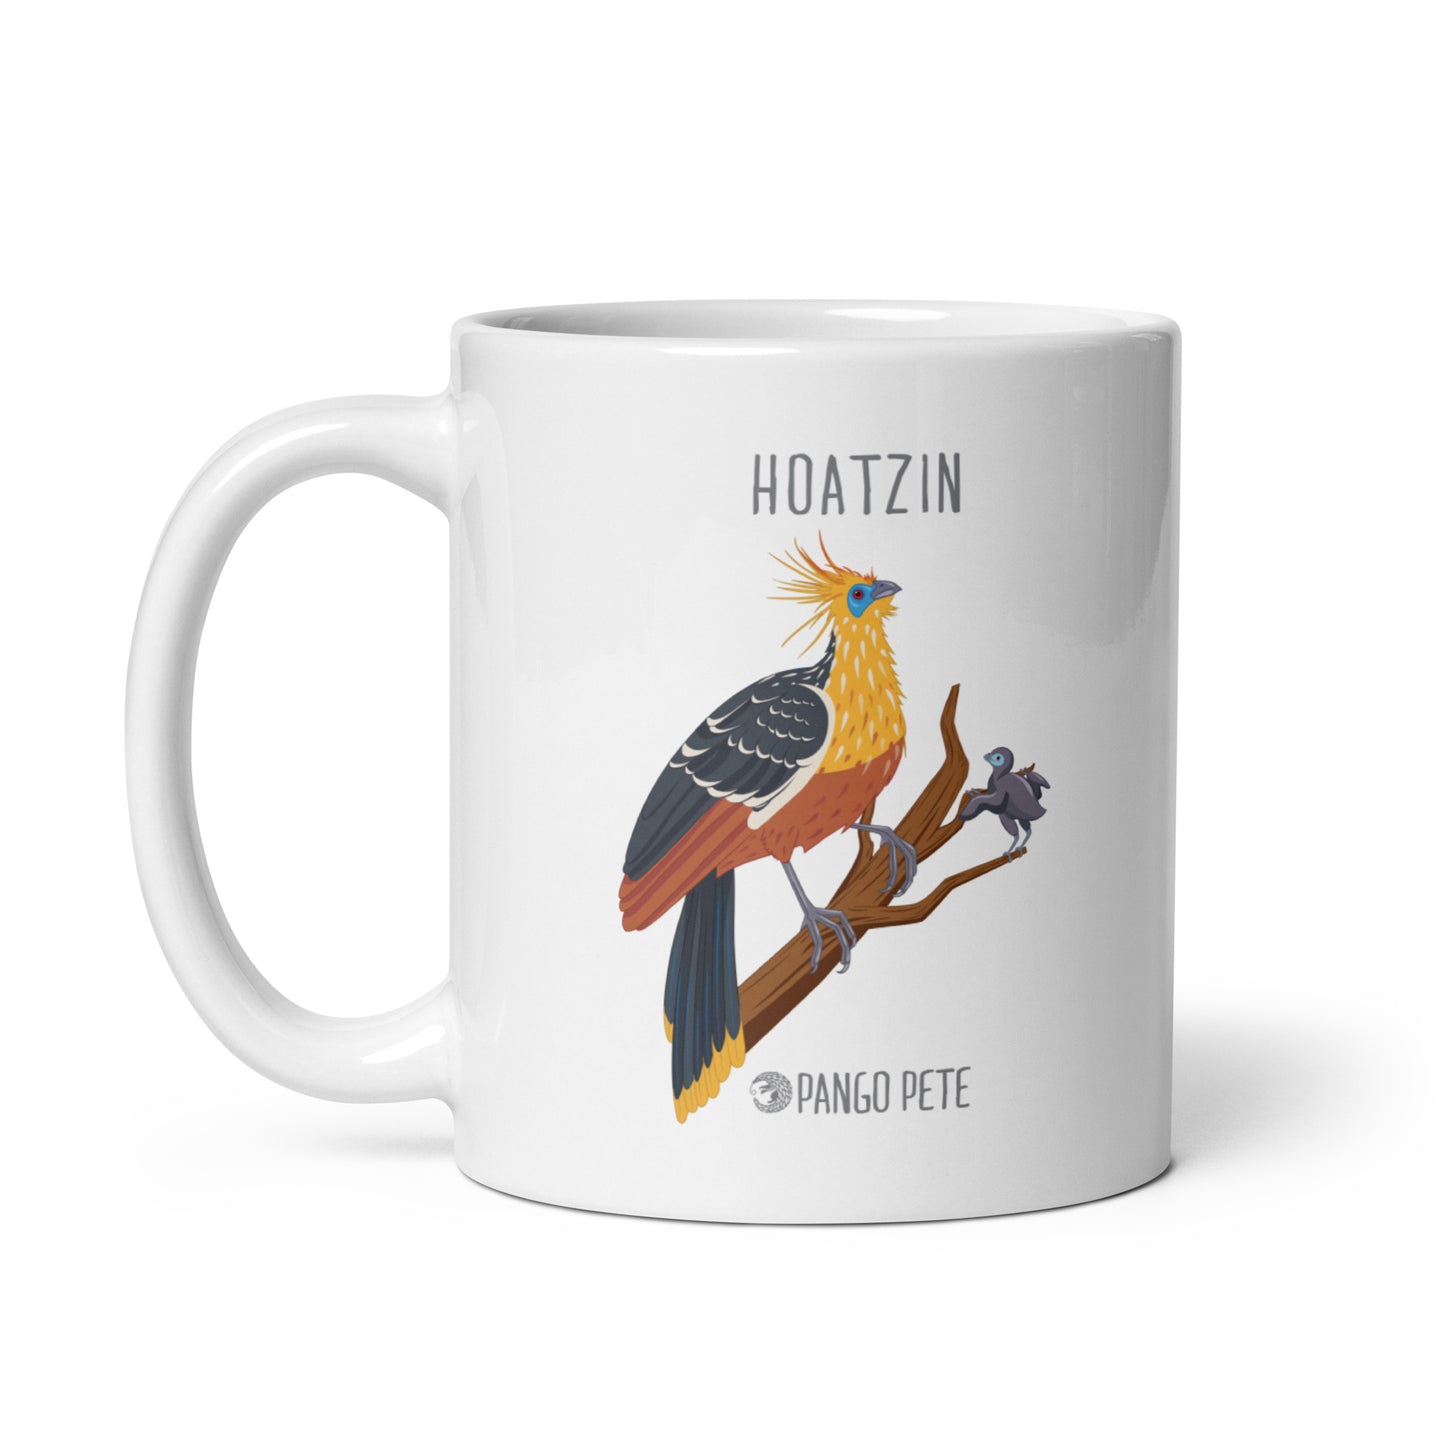 Hoatzin Mug — White, 11 oz.